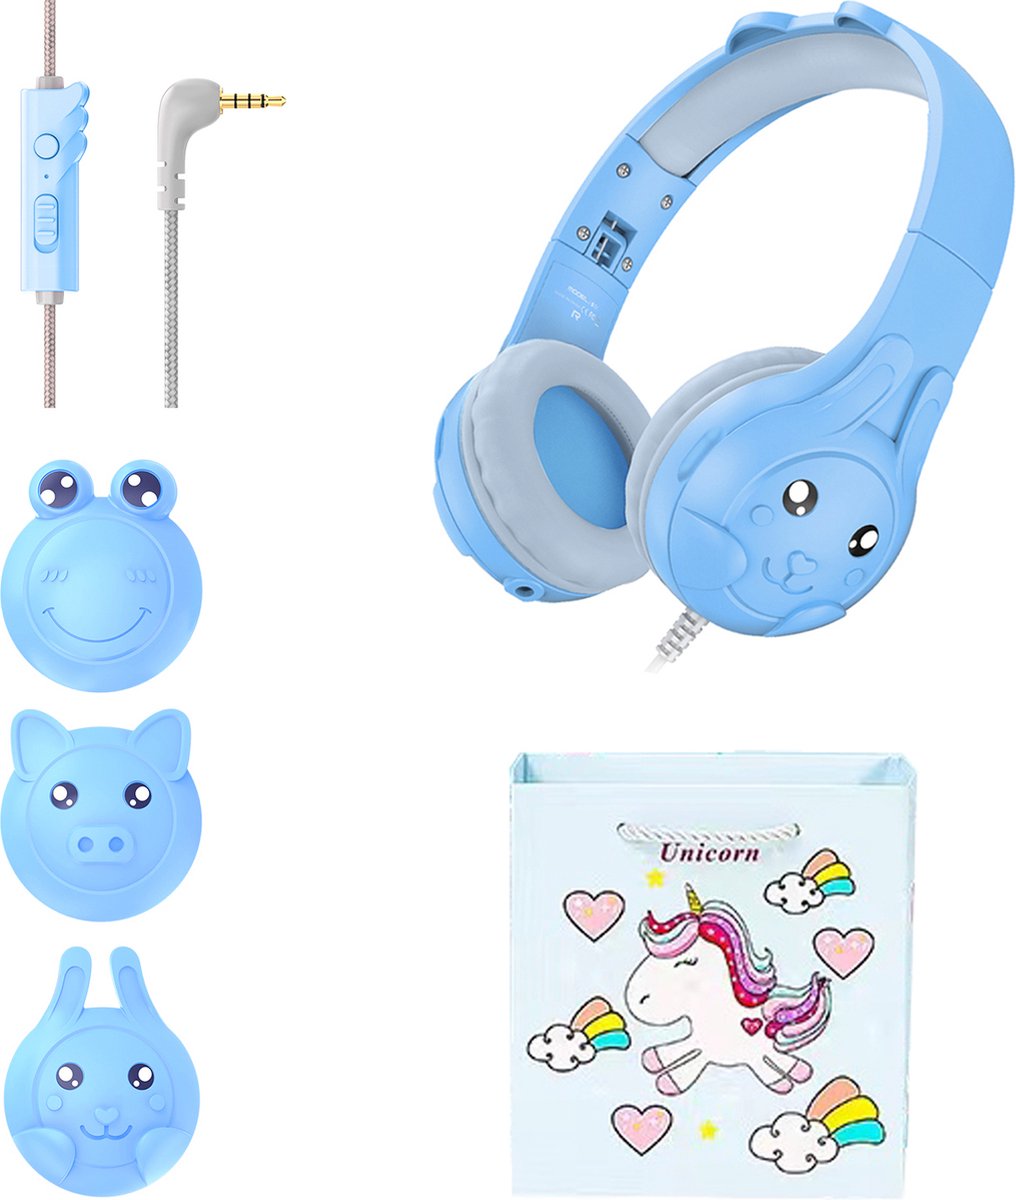 VFLY Kinder Koptelefoon - 3 Verwisselbare Oorschelpen - Bedrade Hoofdtelefoon Kinderen - Opvouwbare Kinder Headphones - Blauw